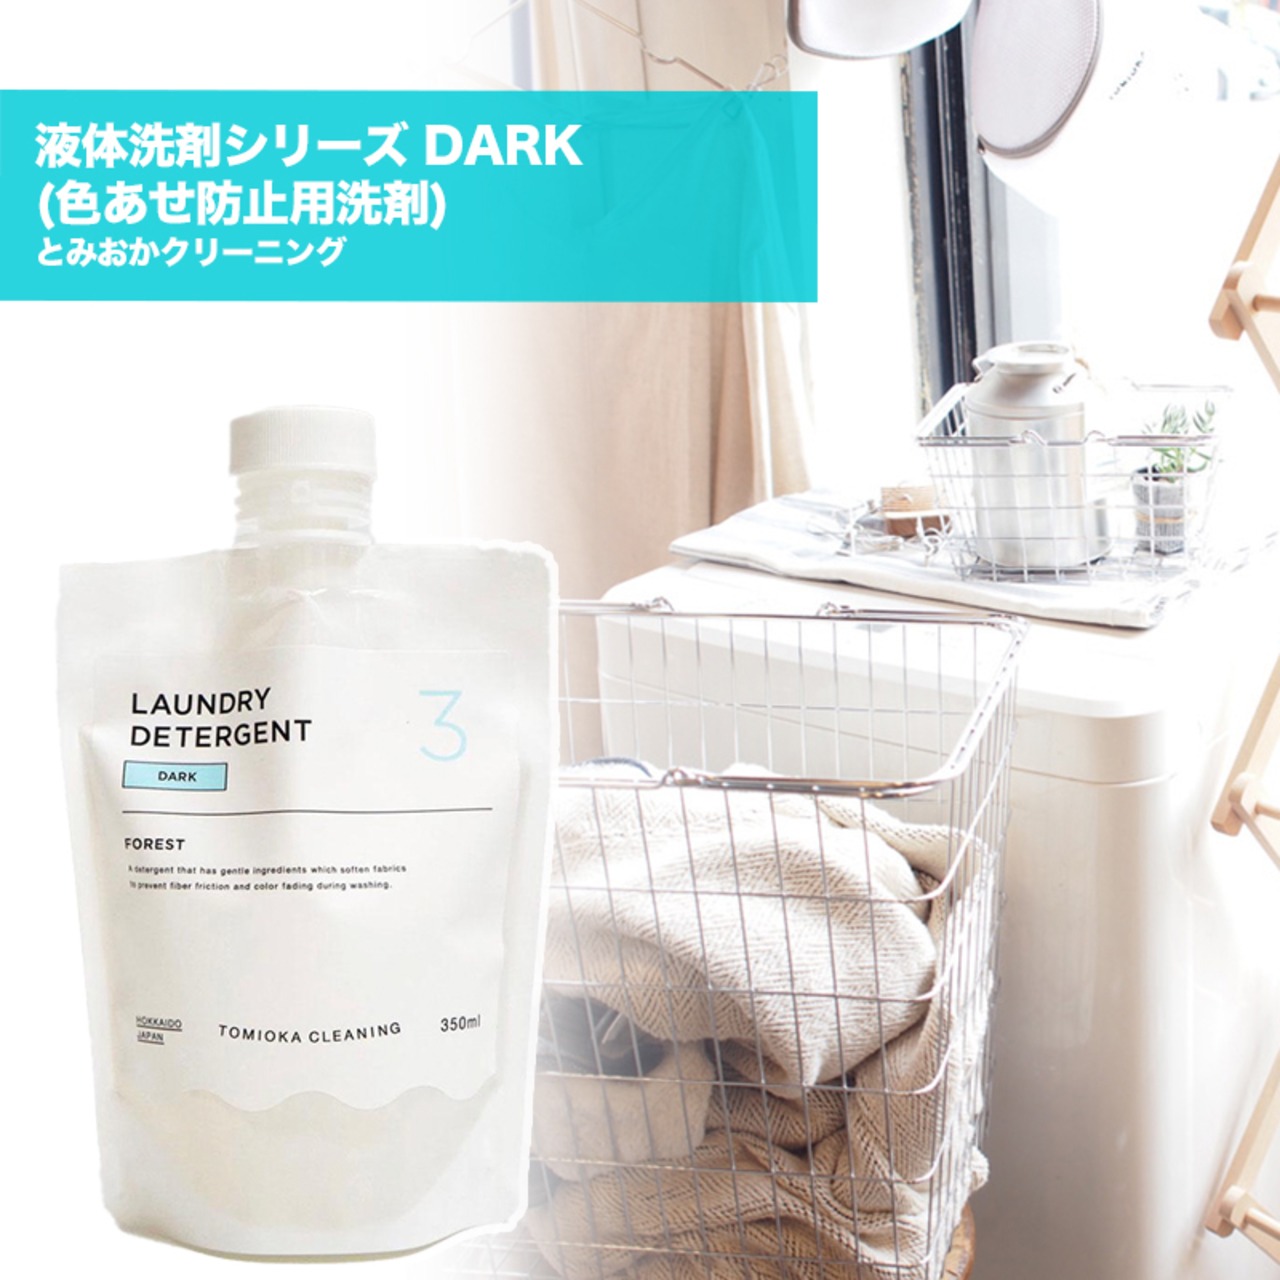 とみおかクリーニング 液体洗剤シリーズ DARK (色あせ防止用洗剤) 日本製